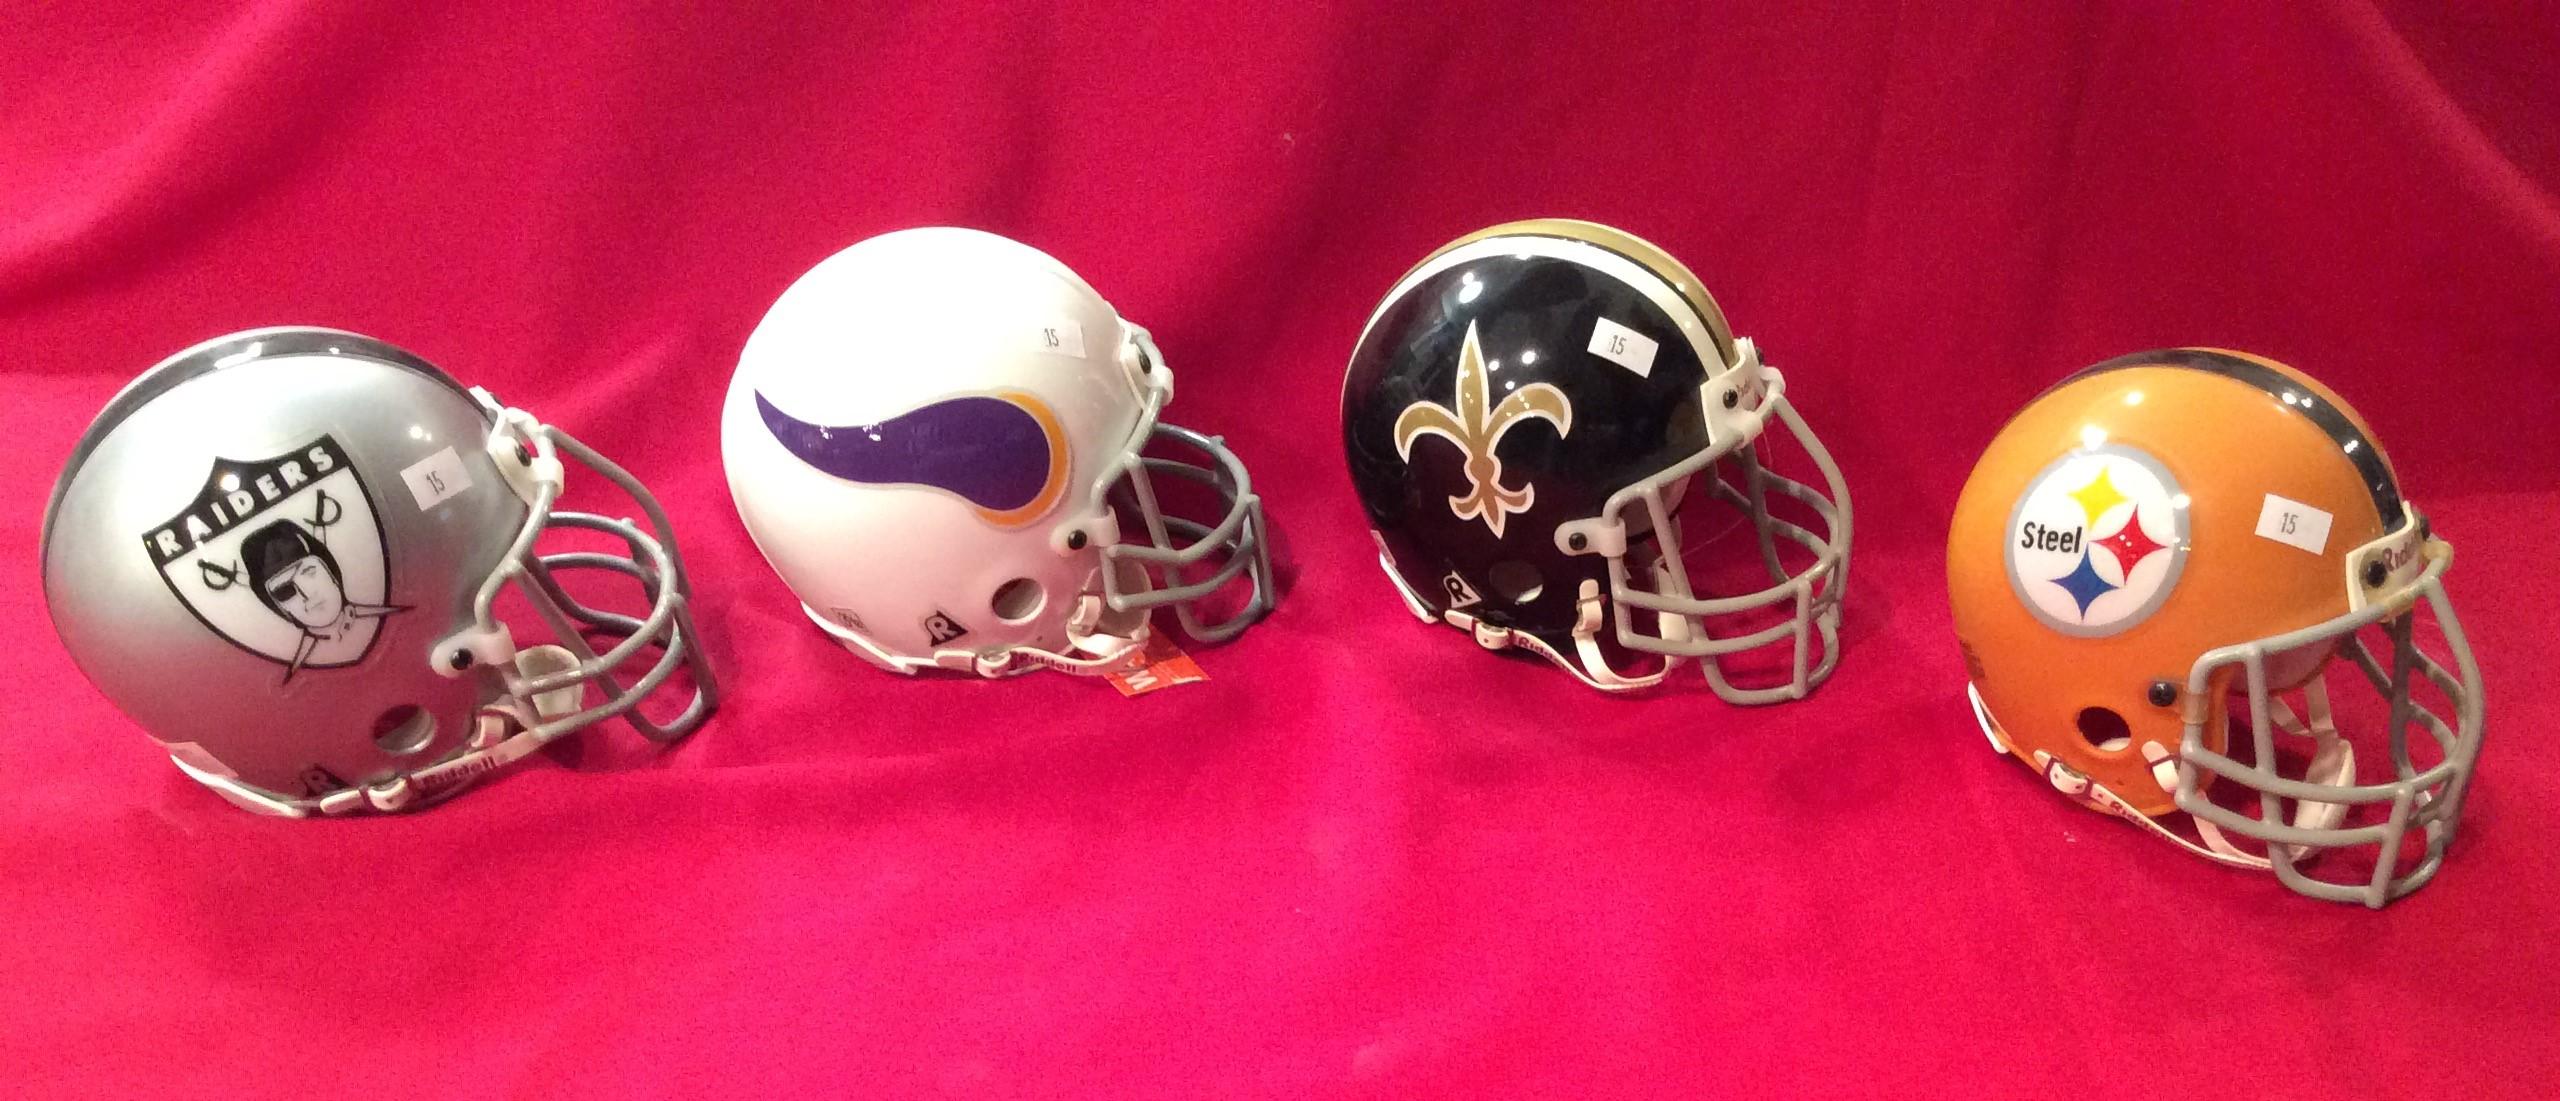 Riddell Mini Helmets 3 5/8" NFL Assortment